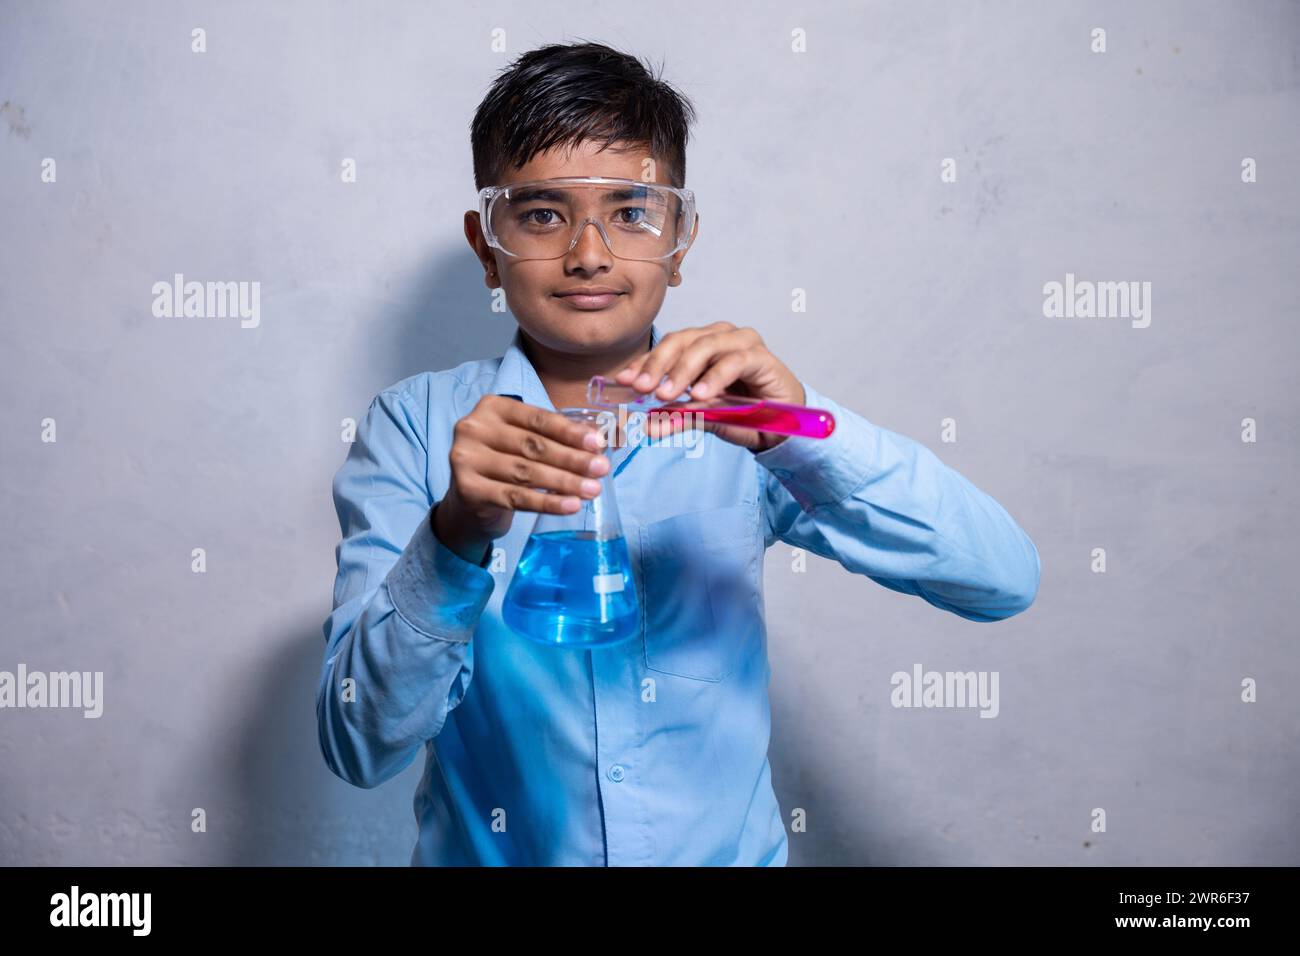 Glücklicher junger indianischer Junge in Schuluniform mit einer Sicherheitsbrille während der Arbeit an seinem Chemieprojekt Experiment mit Reagenzglas und konischem Kolben Stockfoto